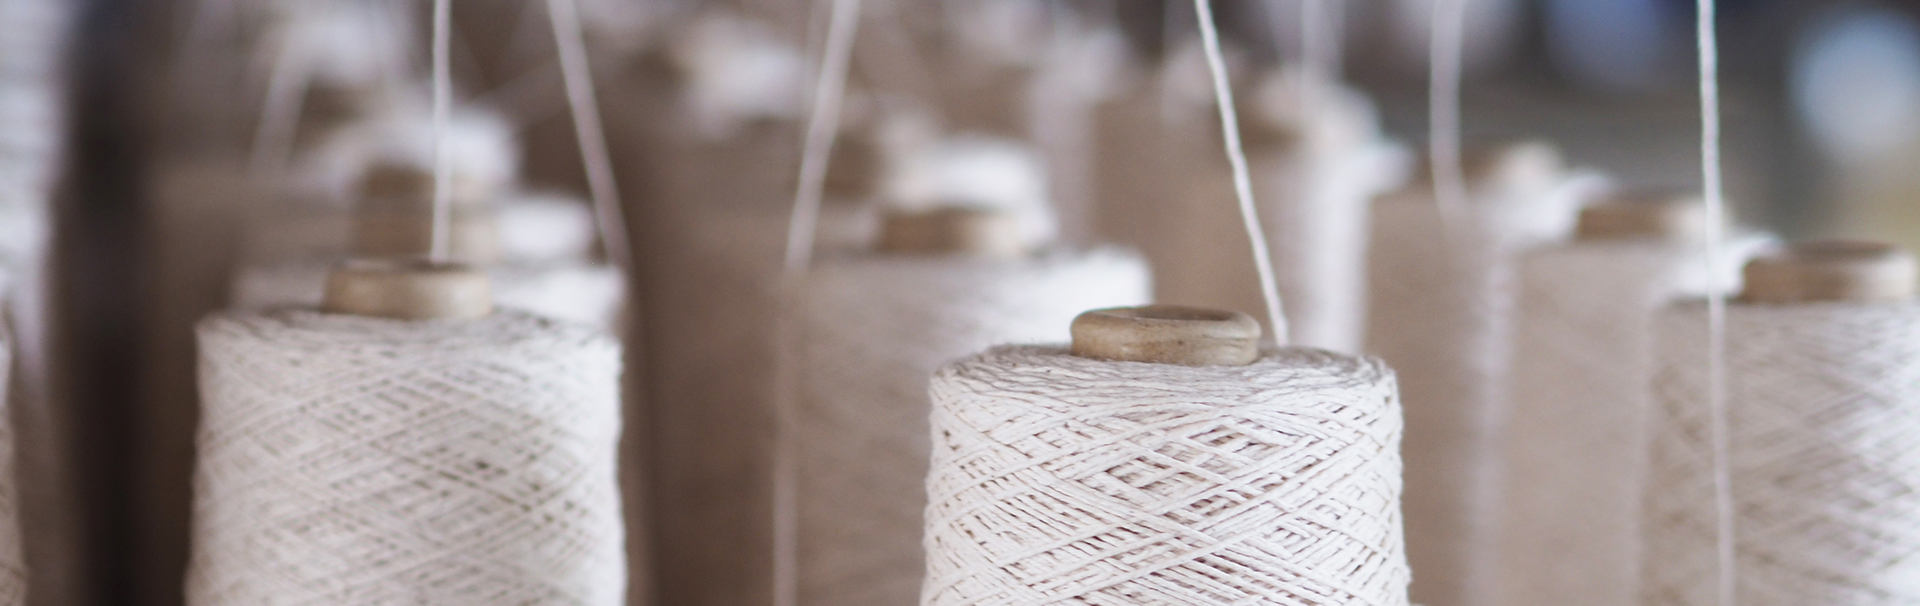 製糸工場で糸が作られている様子